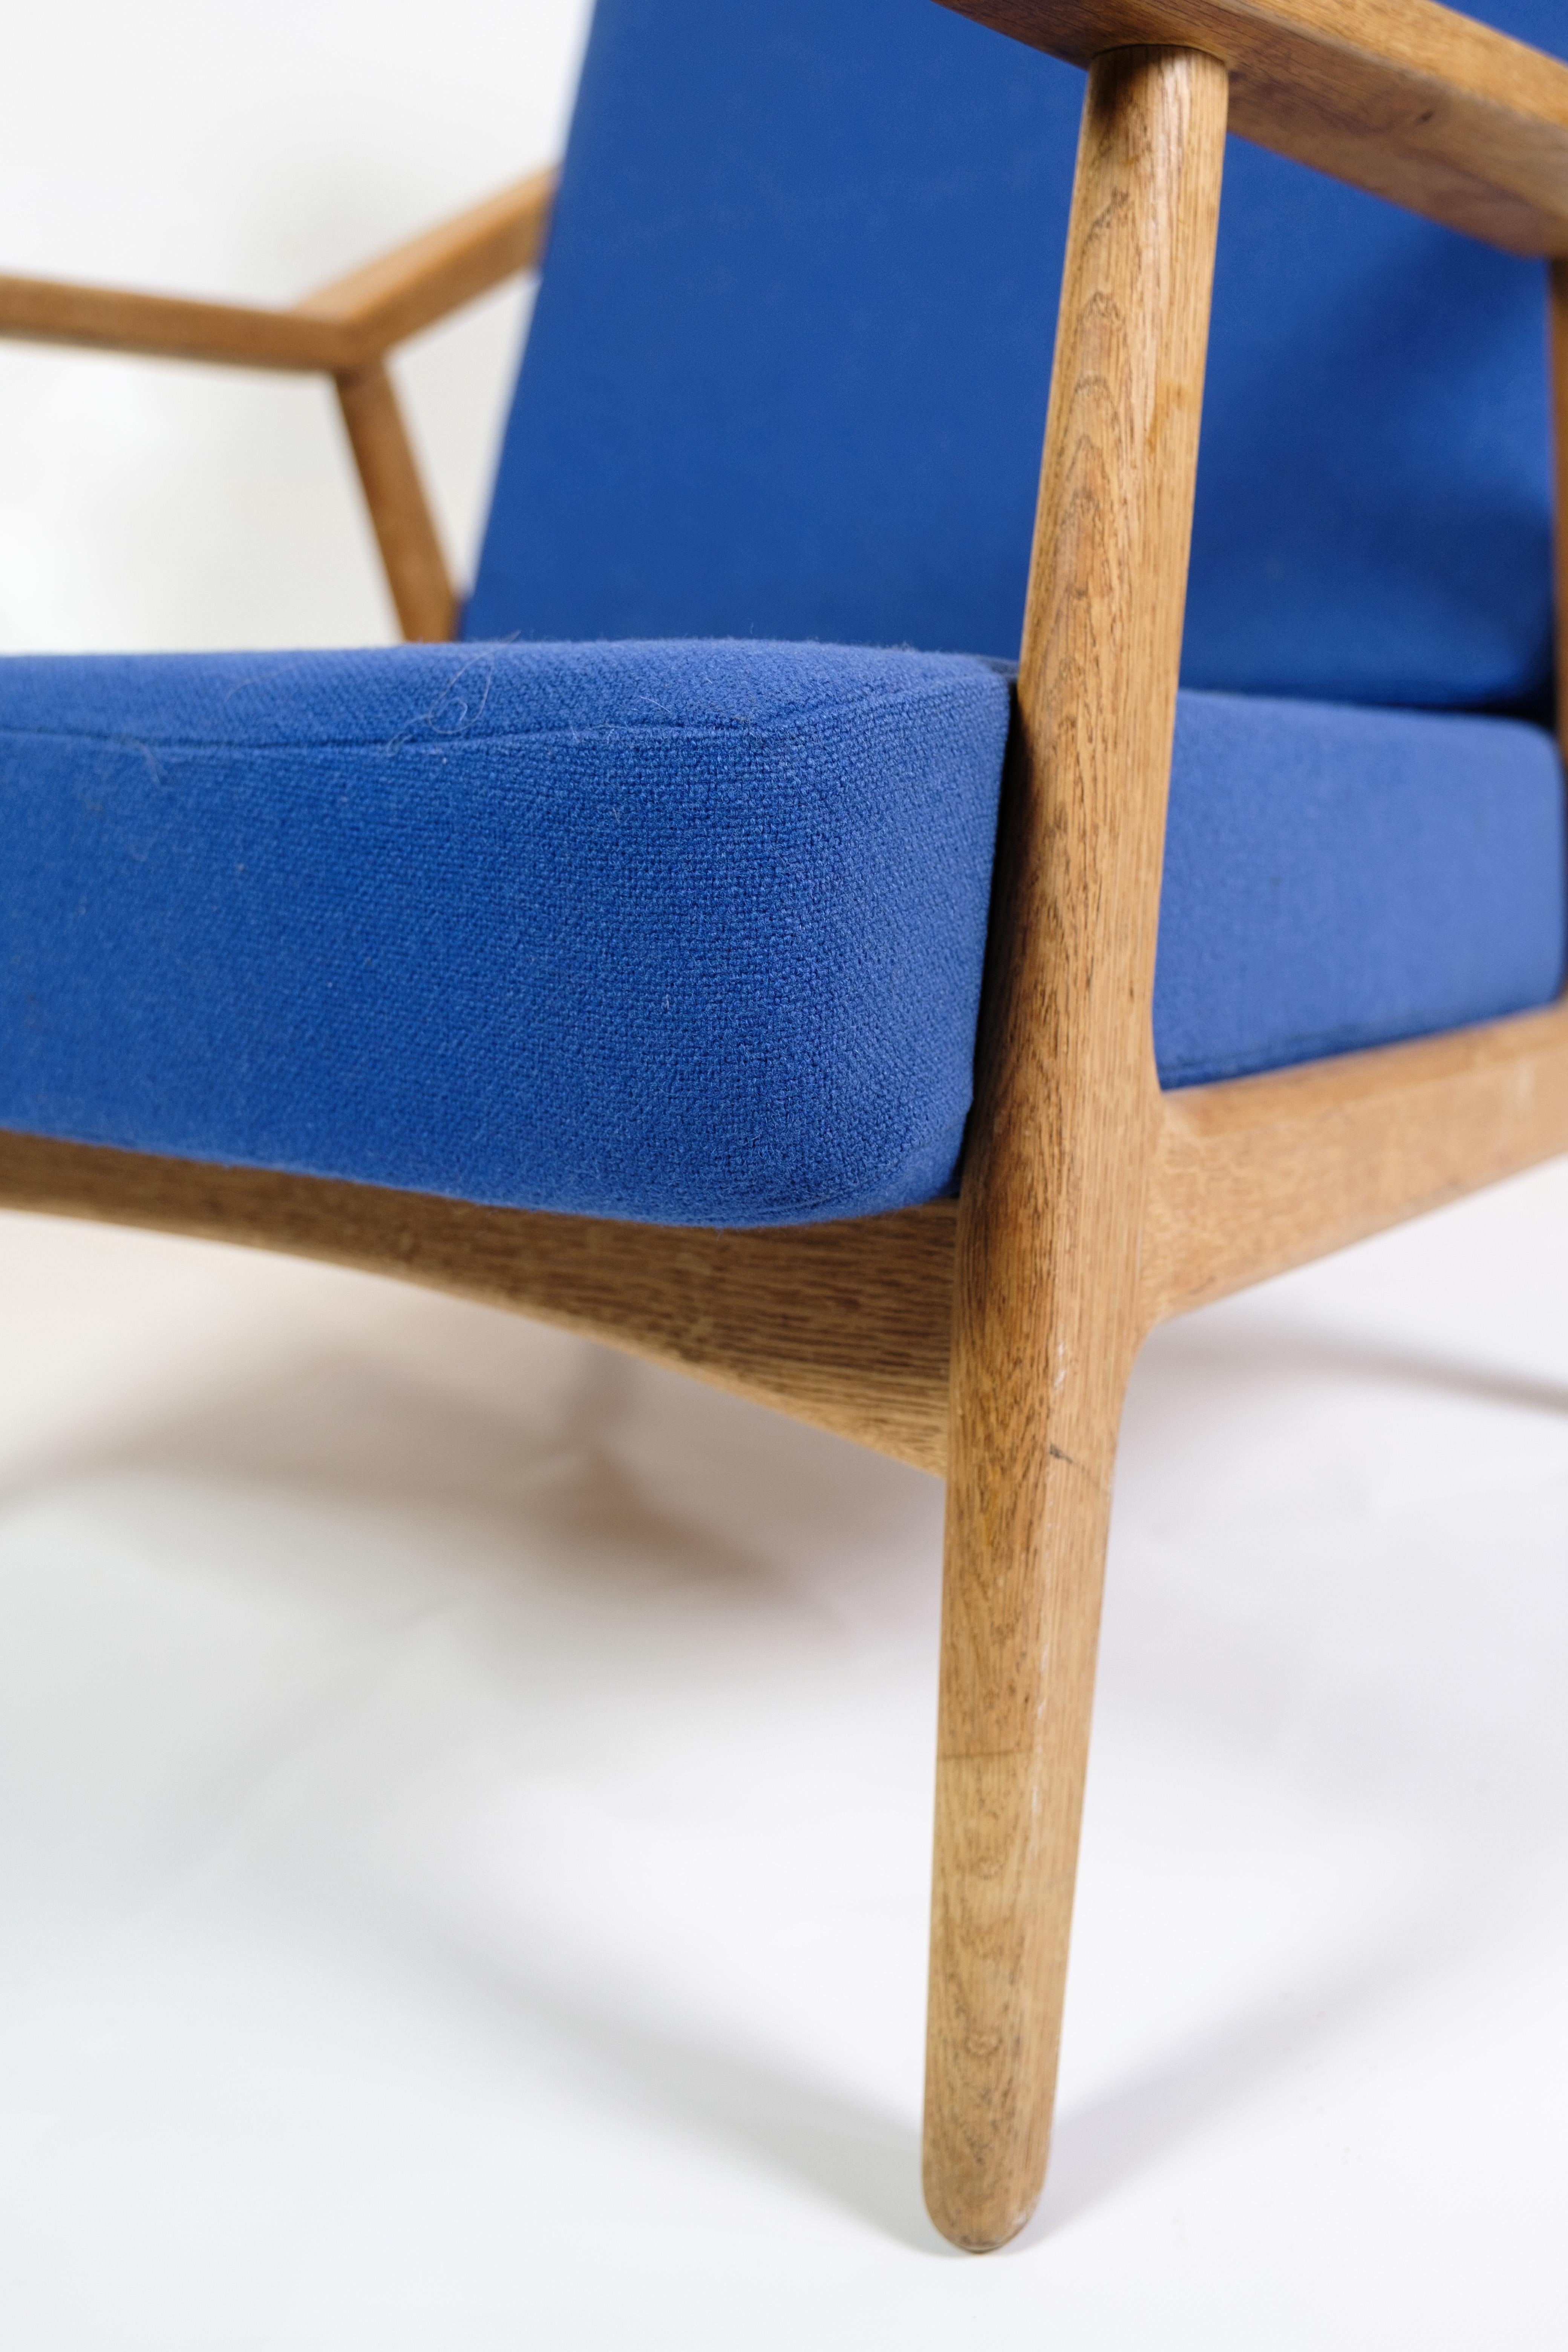 Fauteuil en chêne des années 1960, conçu par H. Brockmann-Petersen, tapissé de tissu bleu

Ce fauteuil en chêne, dont le design est attribué à H. Brockmann-Petersen et qui a été fabriqué dans les années 1960, représente une quintessence du mobilier